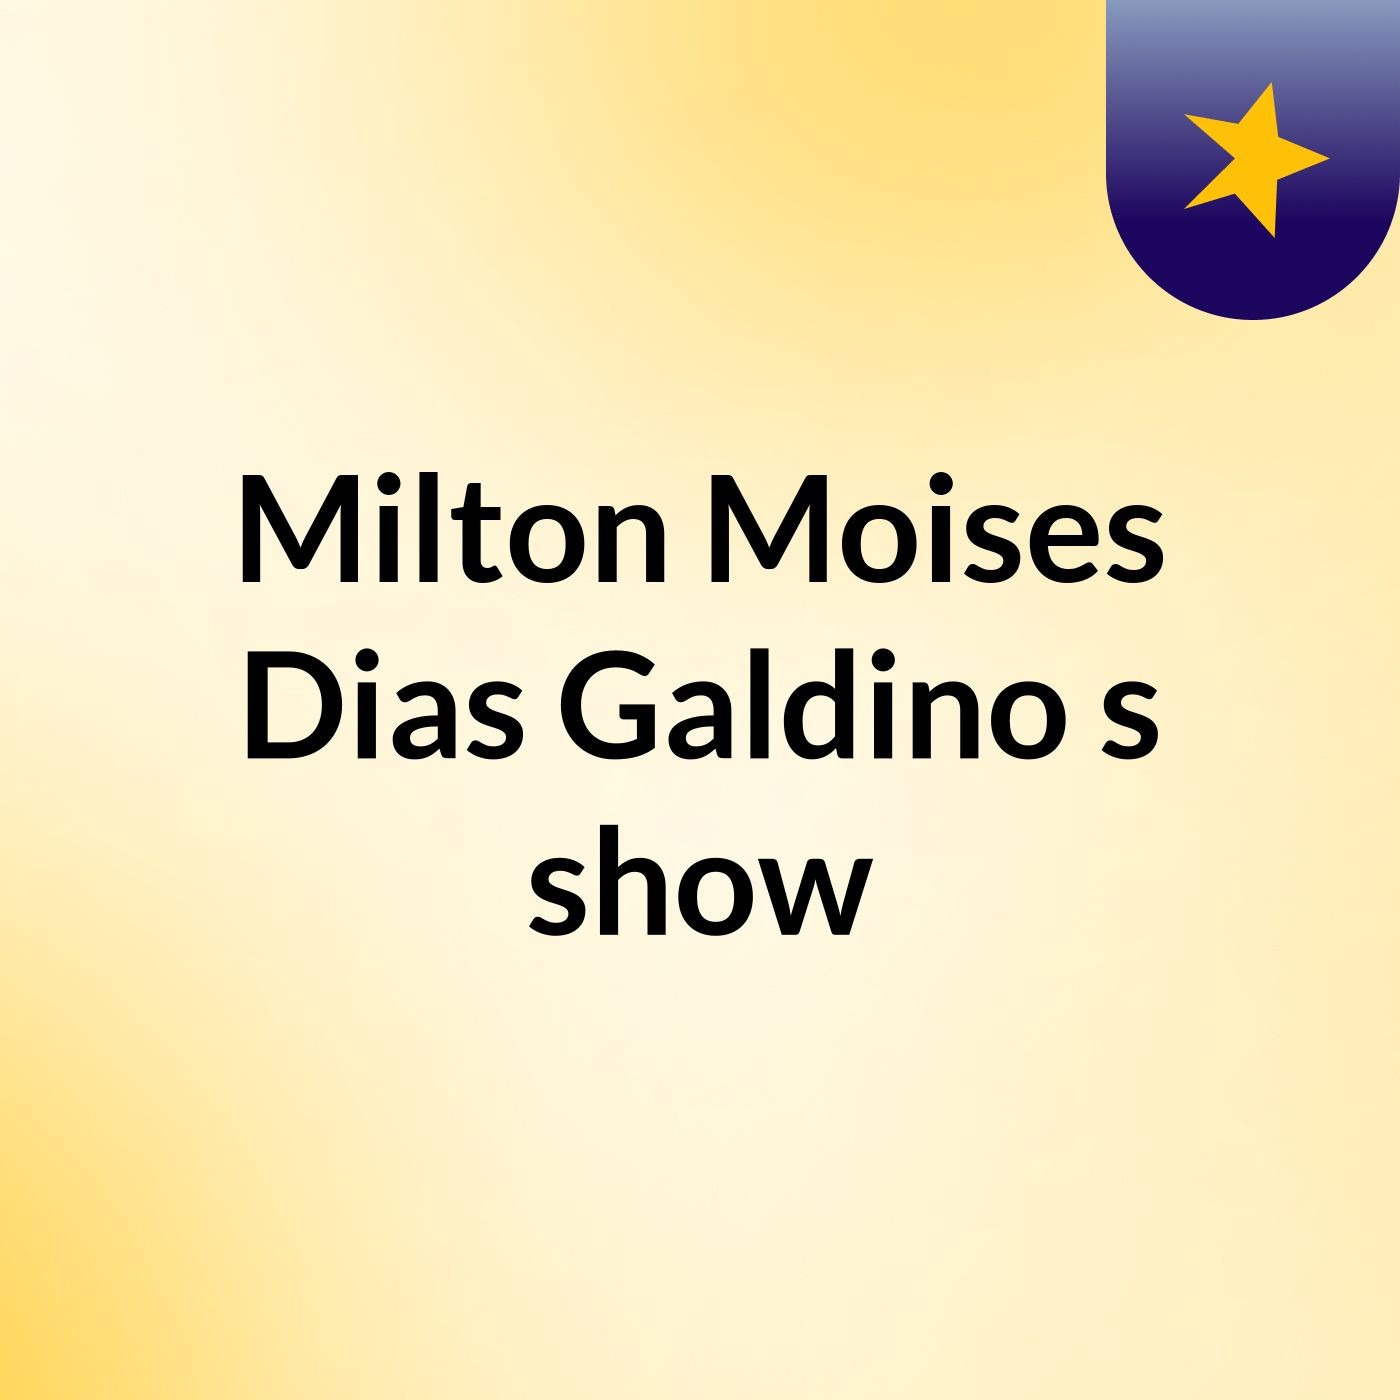 Milton Moises Dias Galdino's show